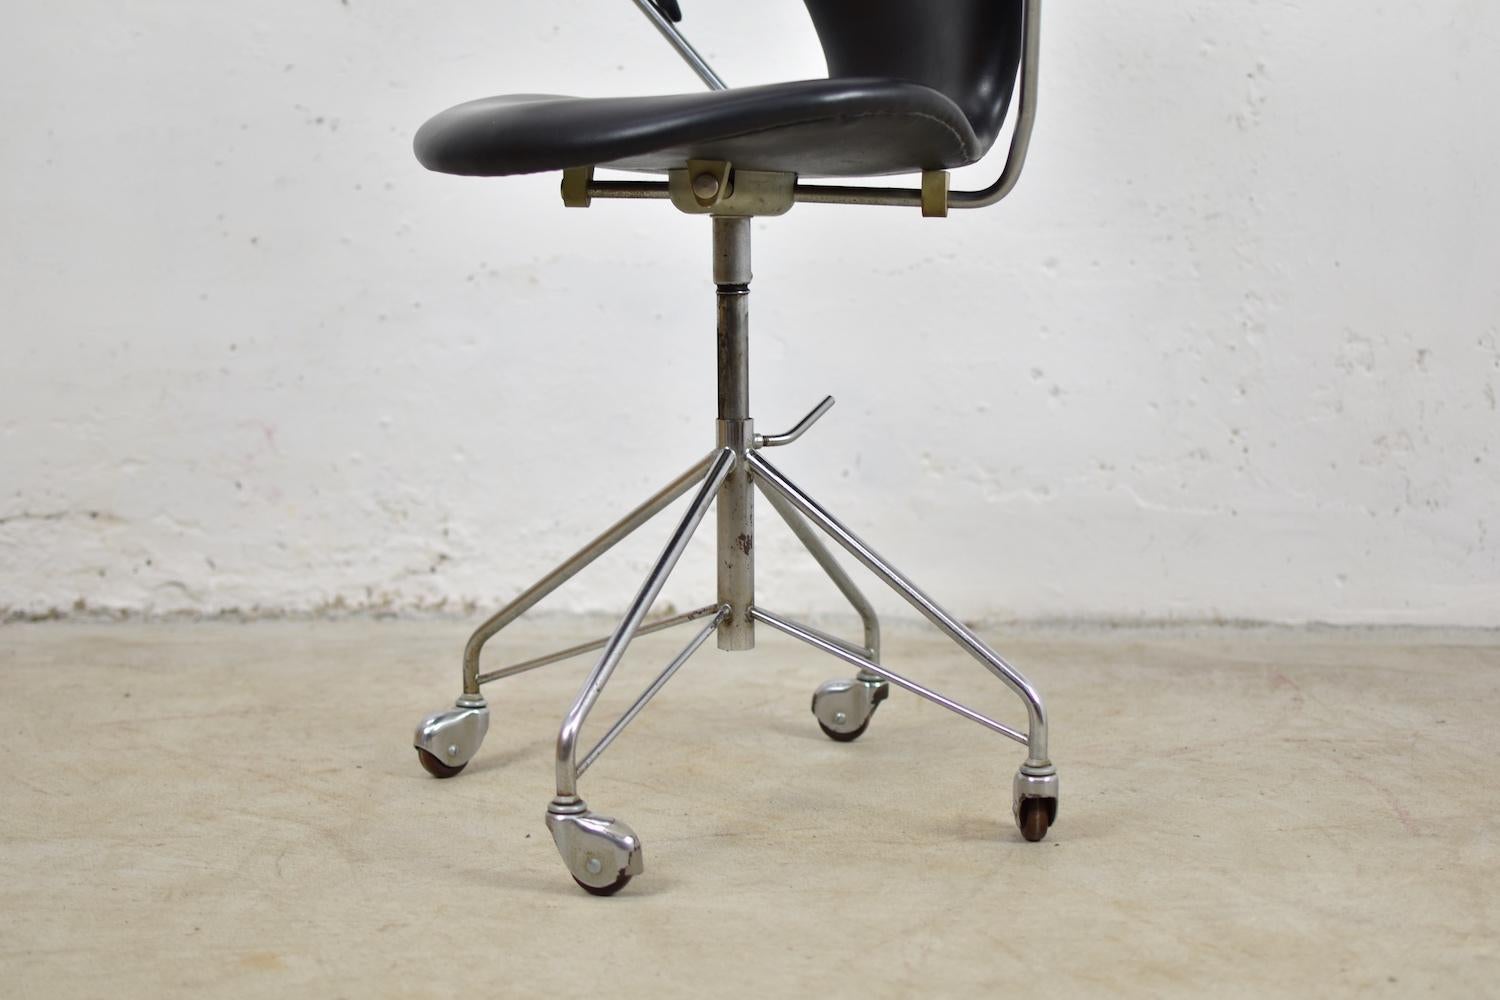 Scandinavian Modern ‘3217’ Swivel Desk Chair by Arne Jacobsen for Fritz Hansen, Denmark, 1955